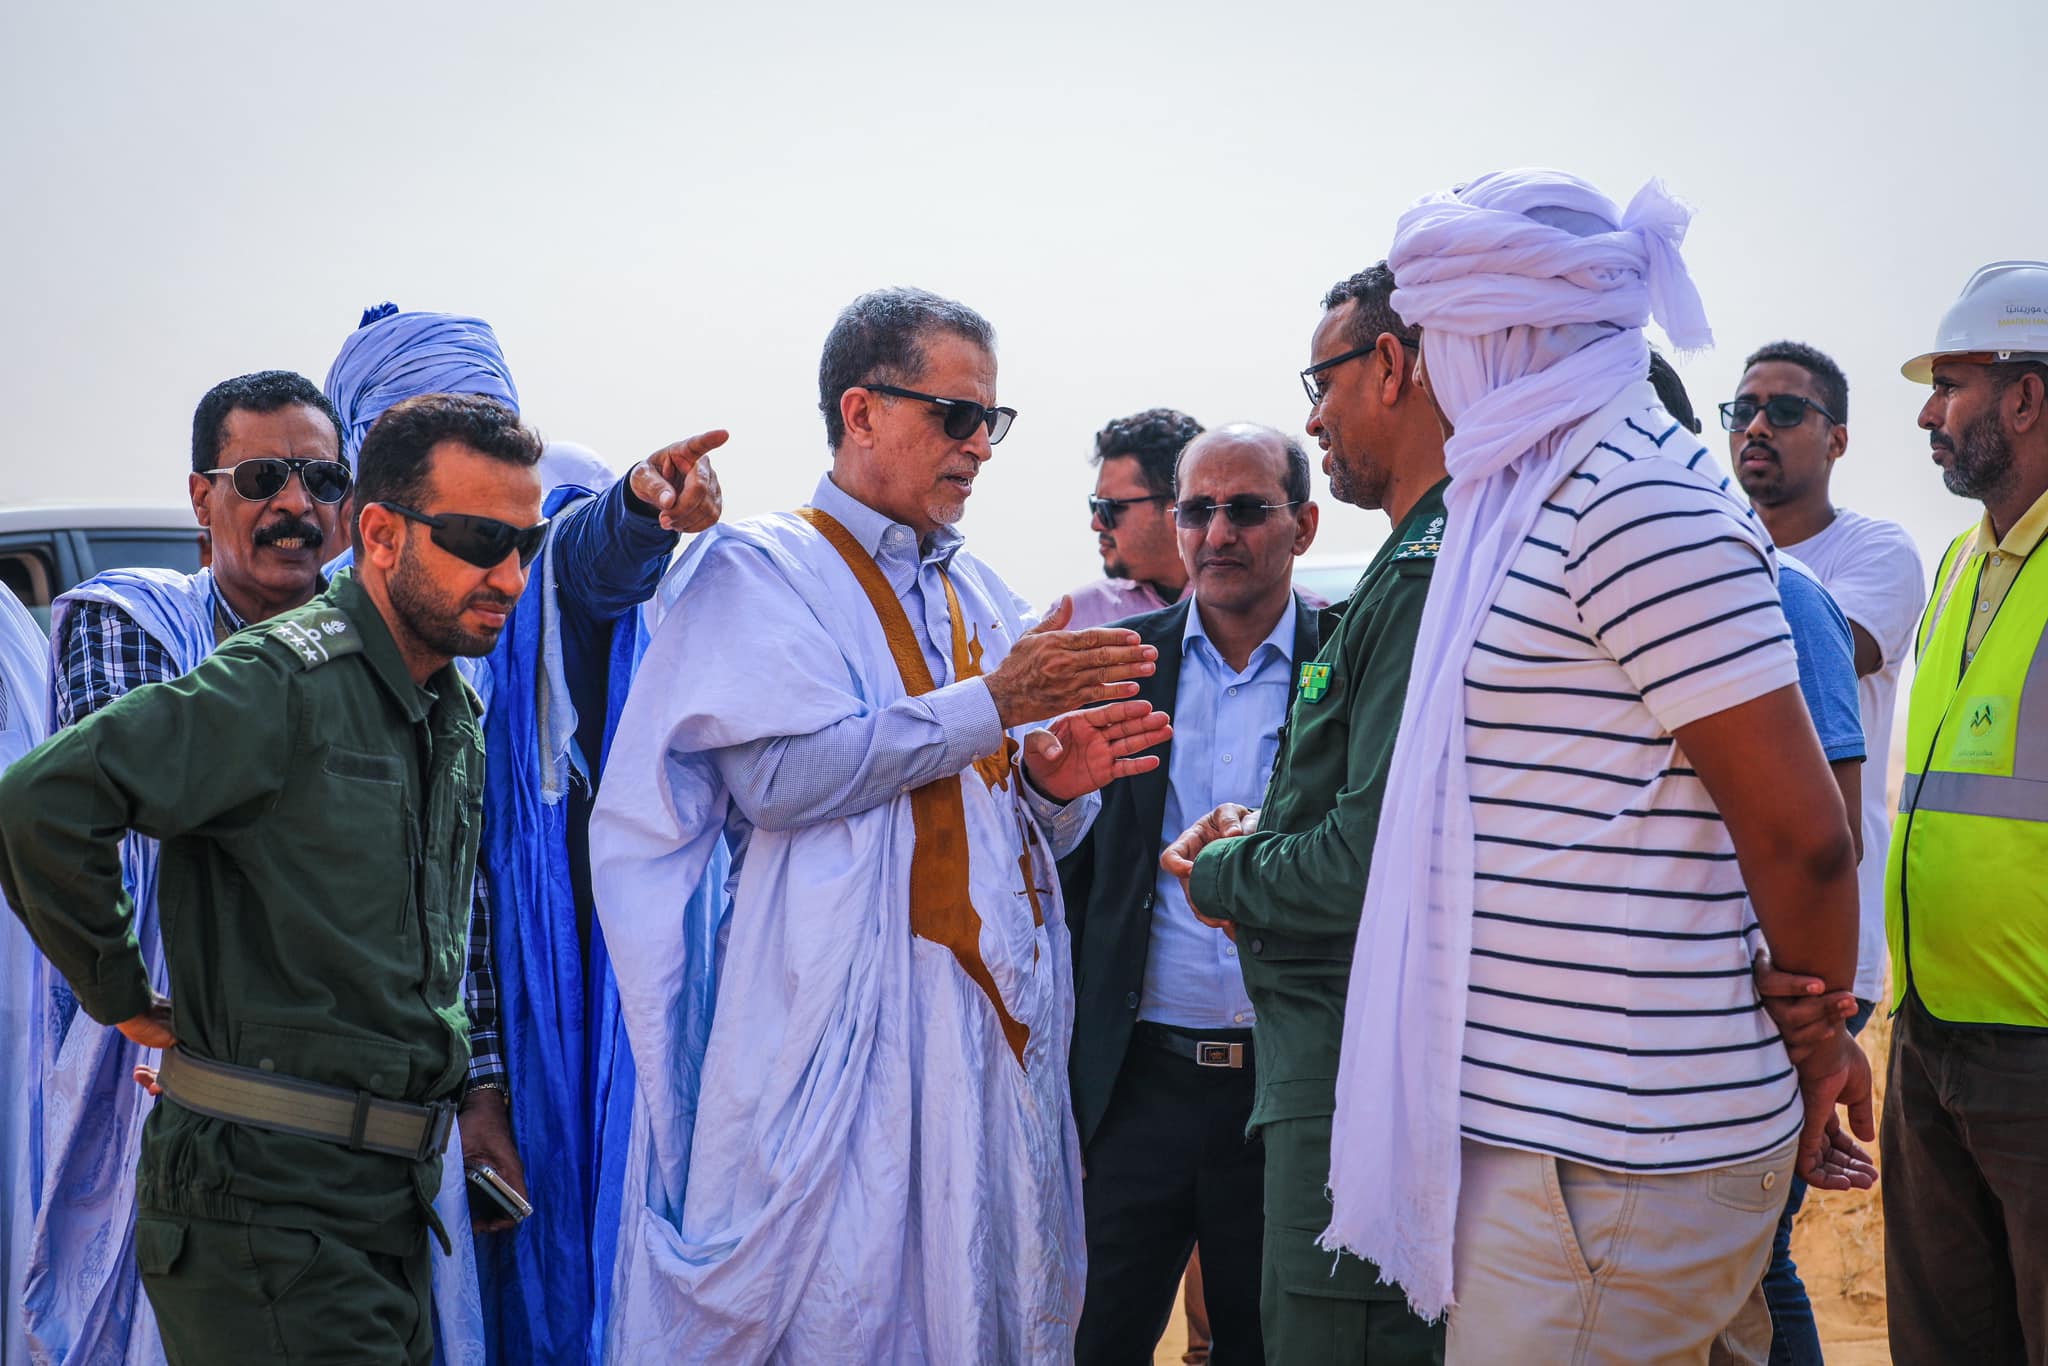 معادن موريتانيا: الفرق الأمنية وطواقم معادن موريتانيا أخذت (...)